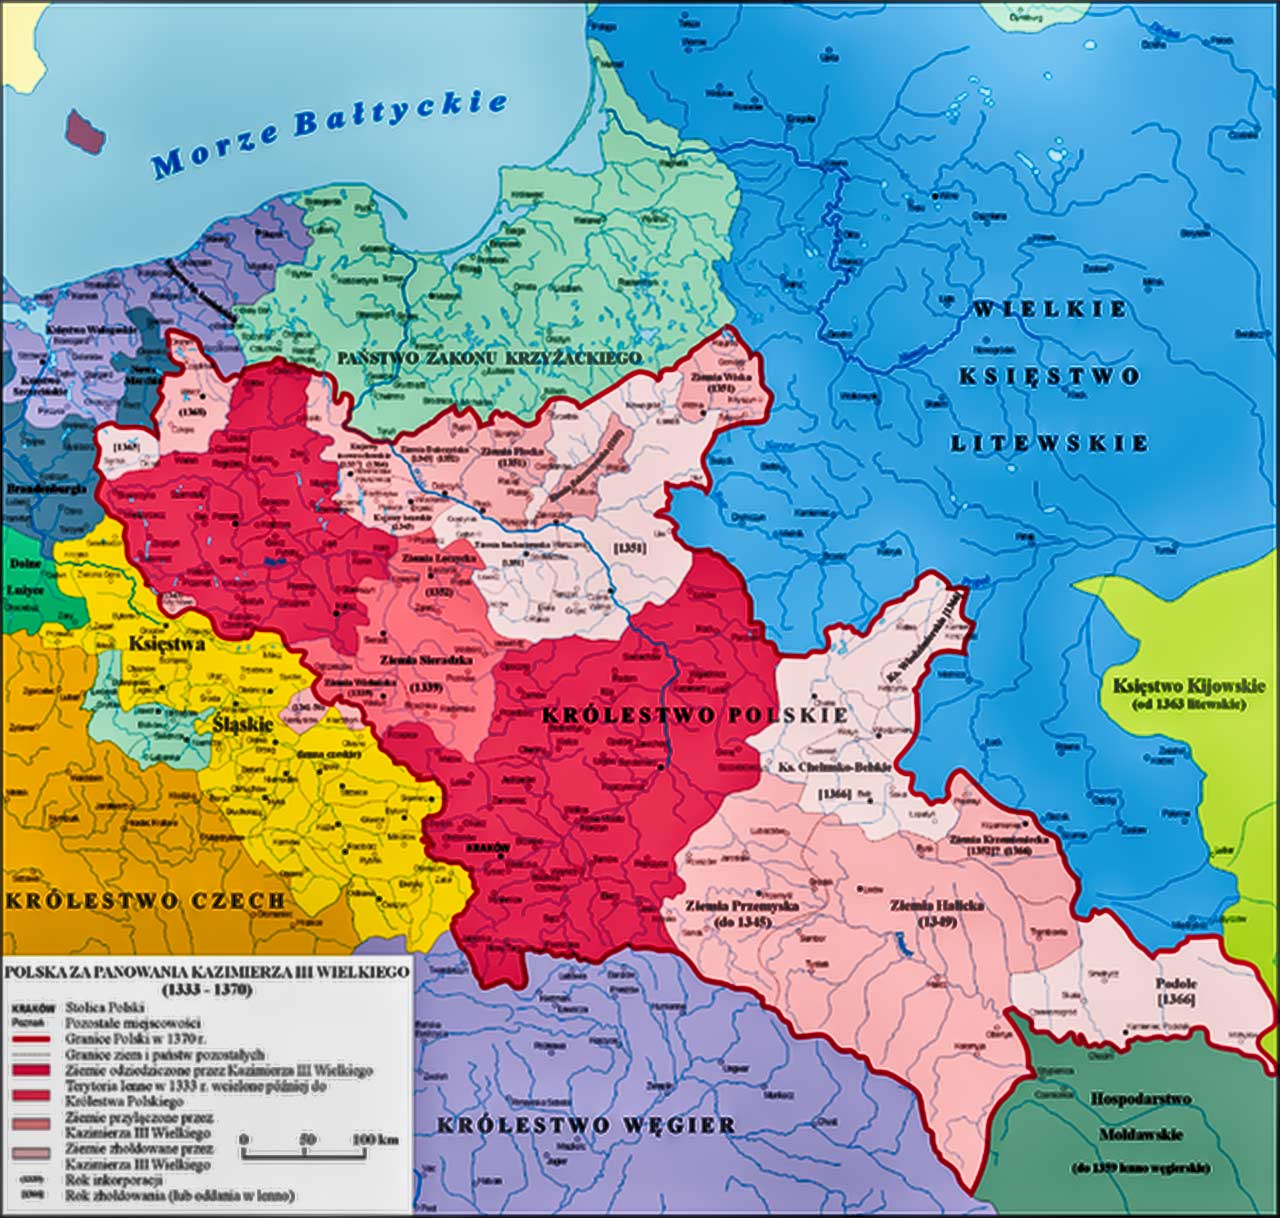 Mapa Europy Wschodniech w czasach Kazimierza III Wielkiego. Źródło: kazimierzwielki.pl